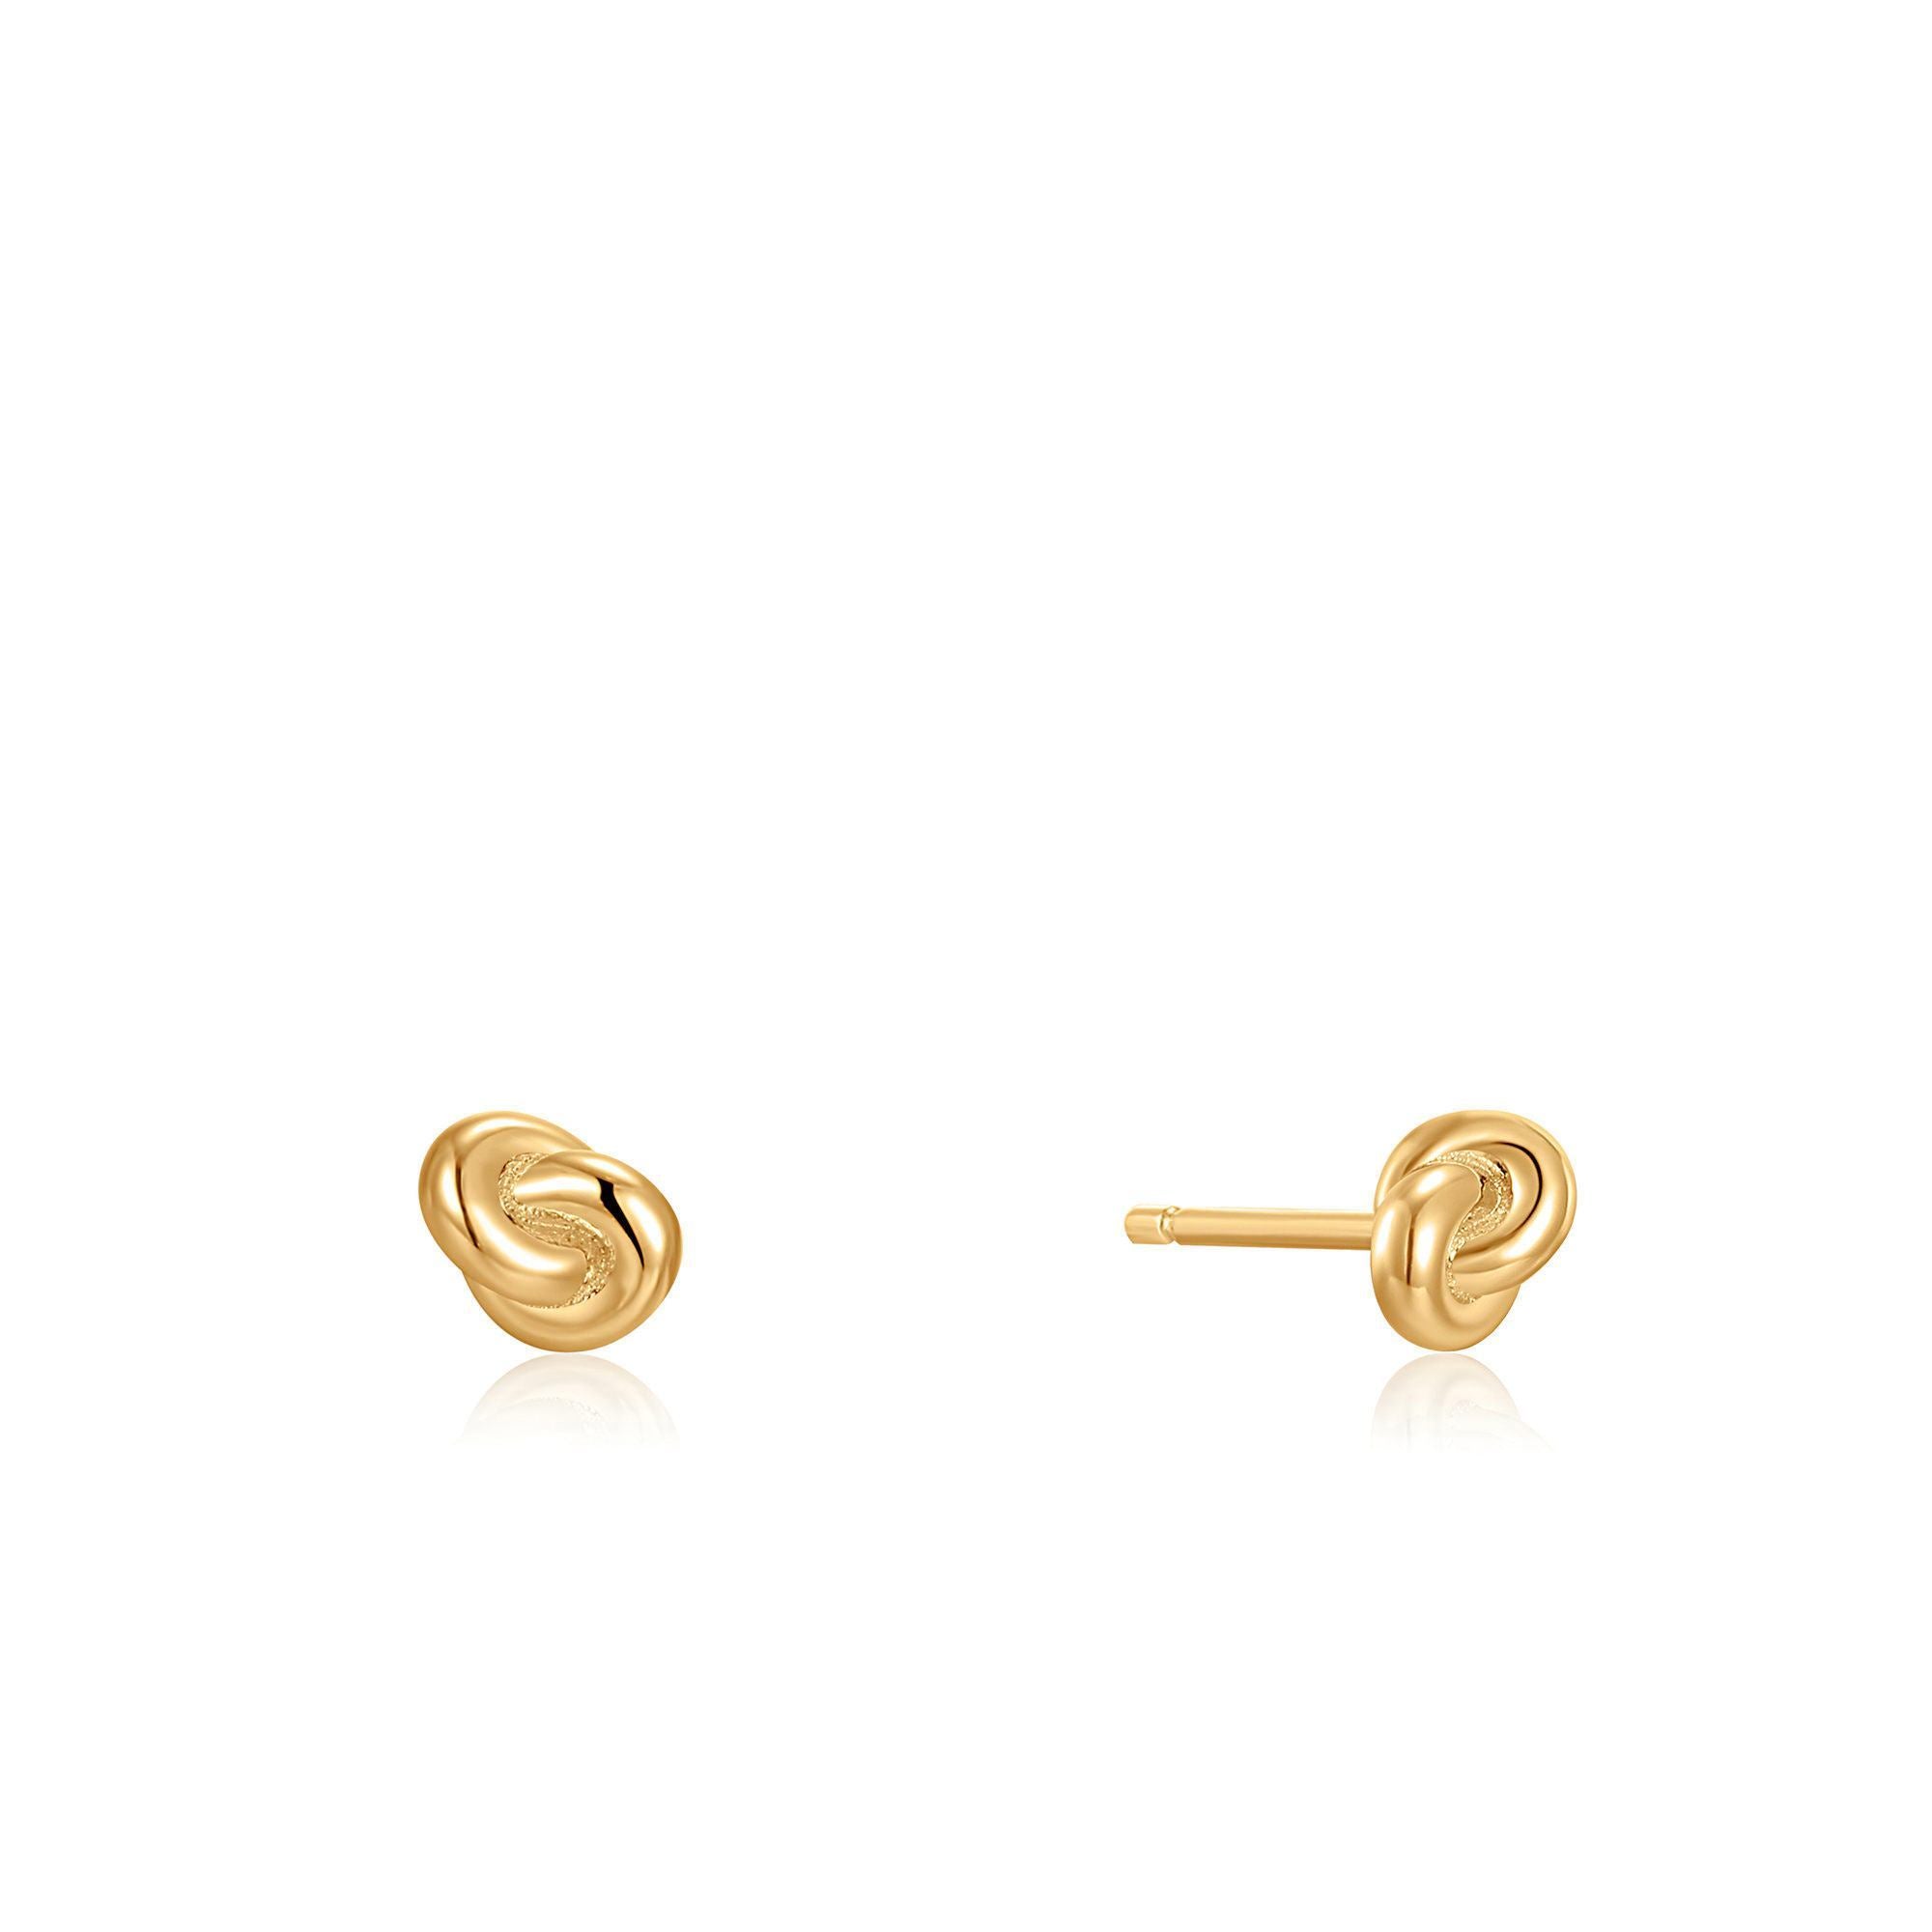 Love Knot Stud Earrings in 14K Gold